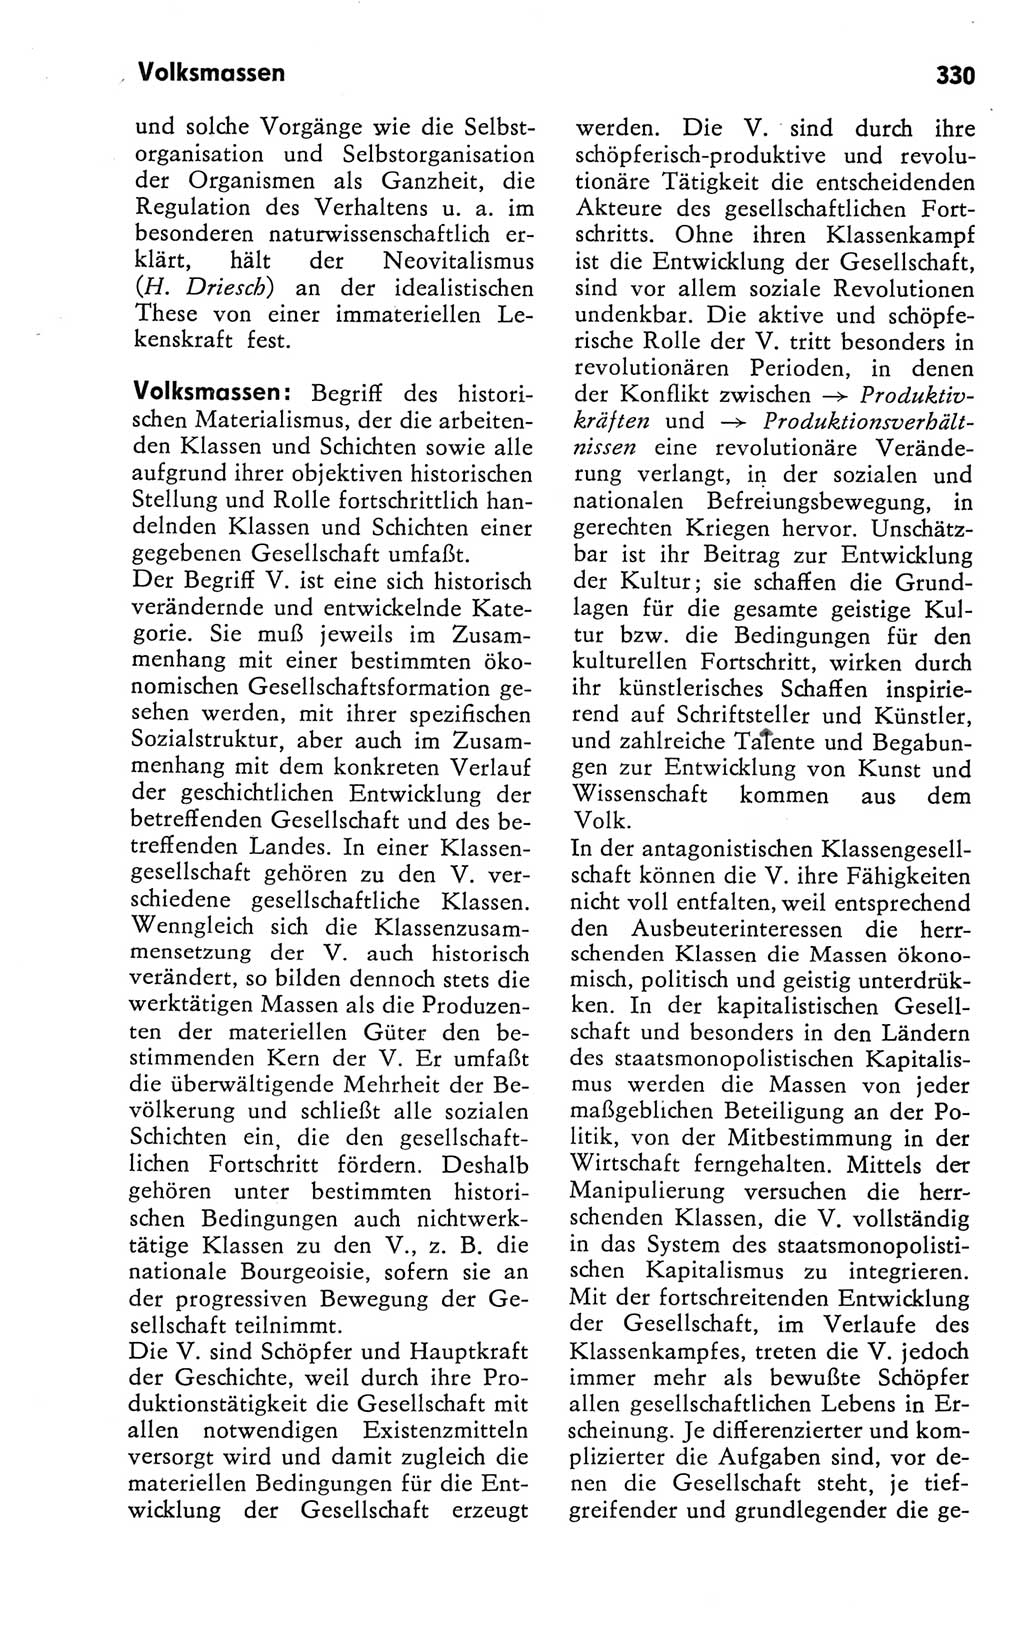 Kleines Wörterbuch der marxistisch-leninistischen Philosophie [Deutsche Demokratische Republik (DDR)] 1981, Seite 330 (Kl. Wb. ML Phil. DDR 1981, S. 330)